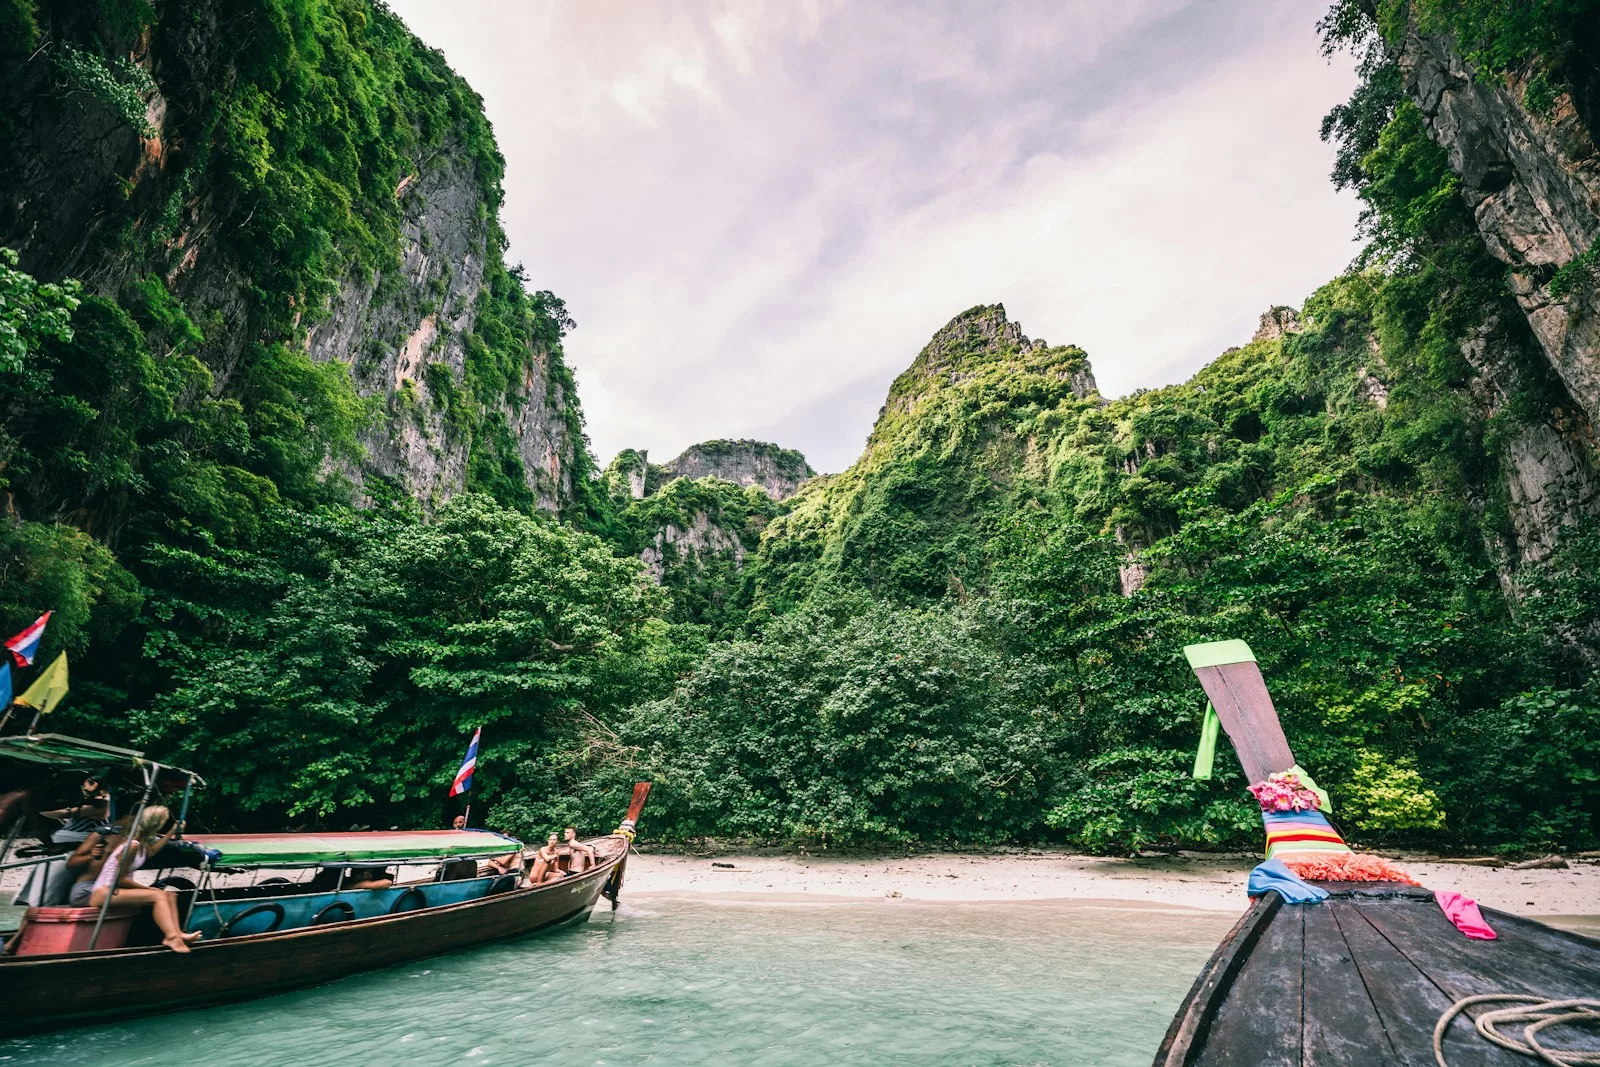 Un voyage en Thaïlande en famille permet de découvrir des temples historiques et des plages idylliques, en passant par des parcs naturels et des activités culturelles.